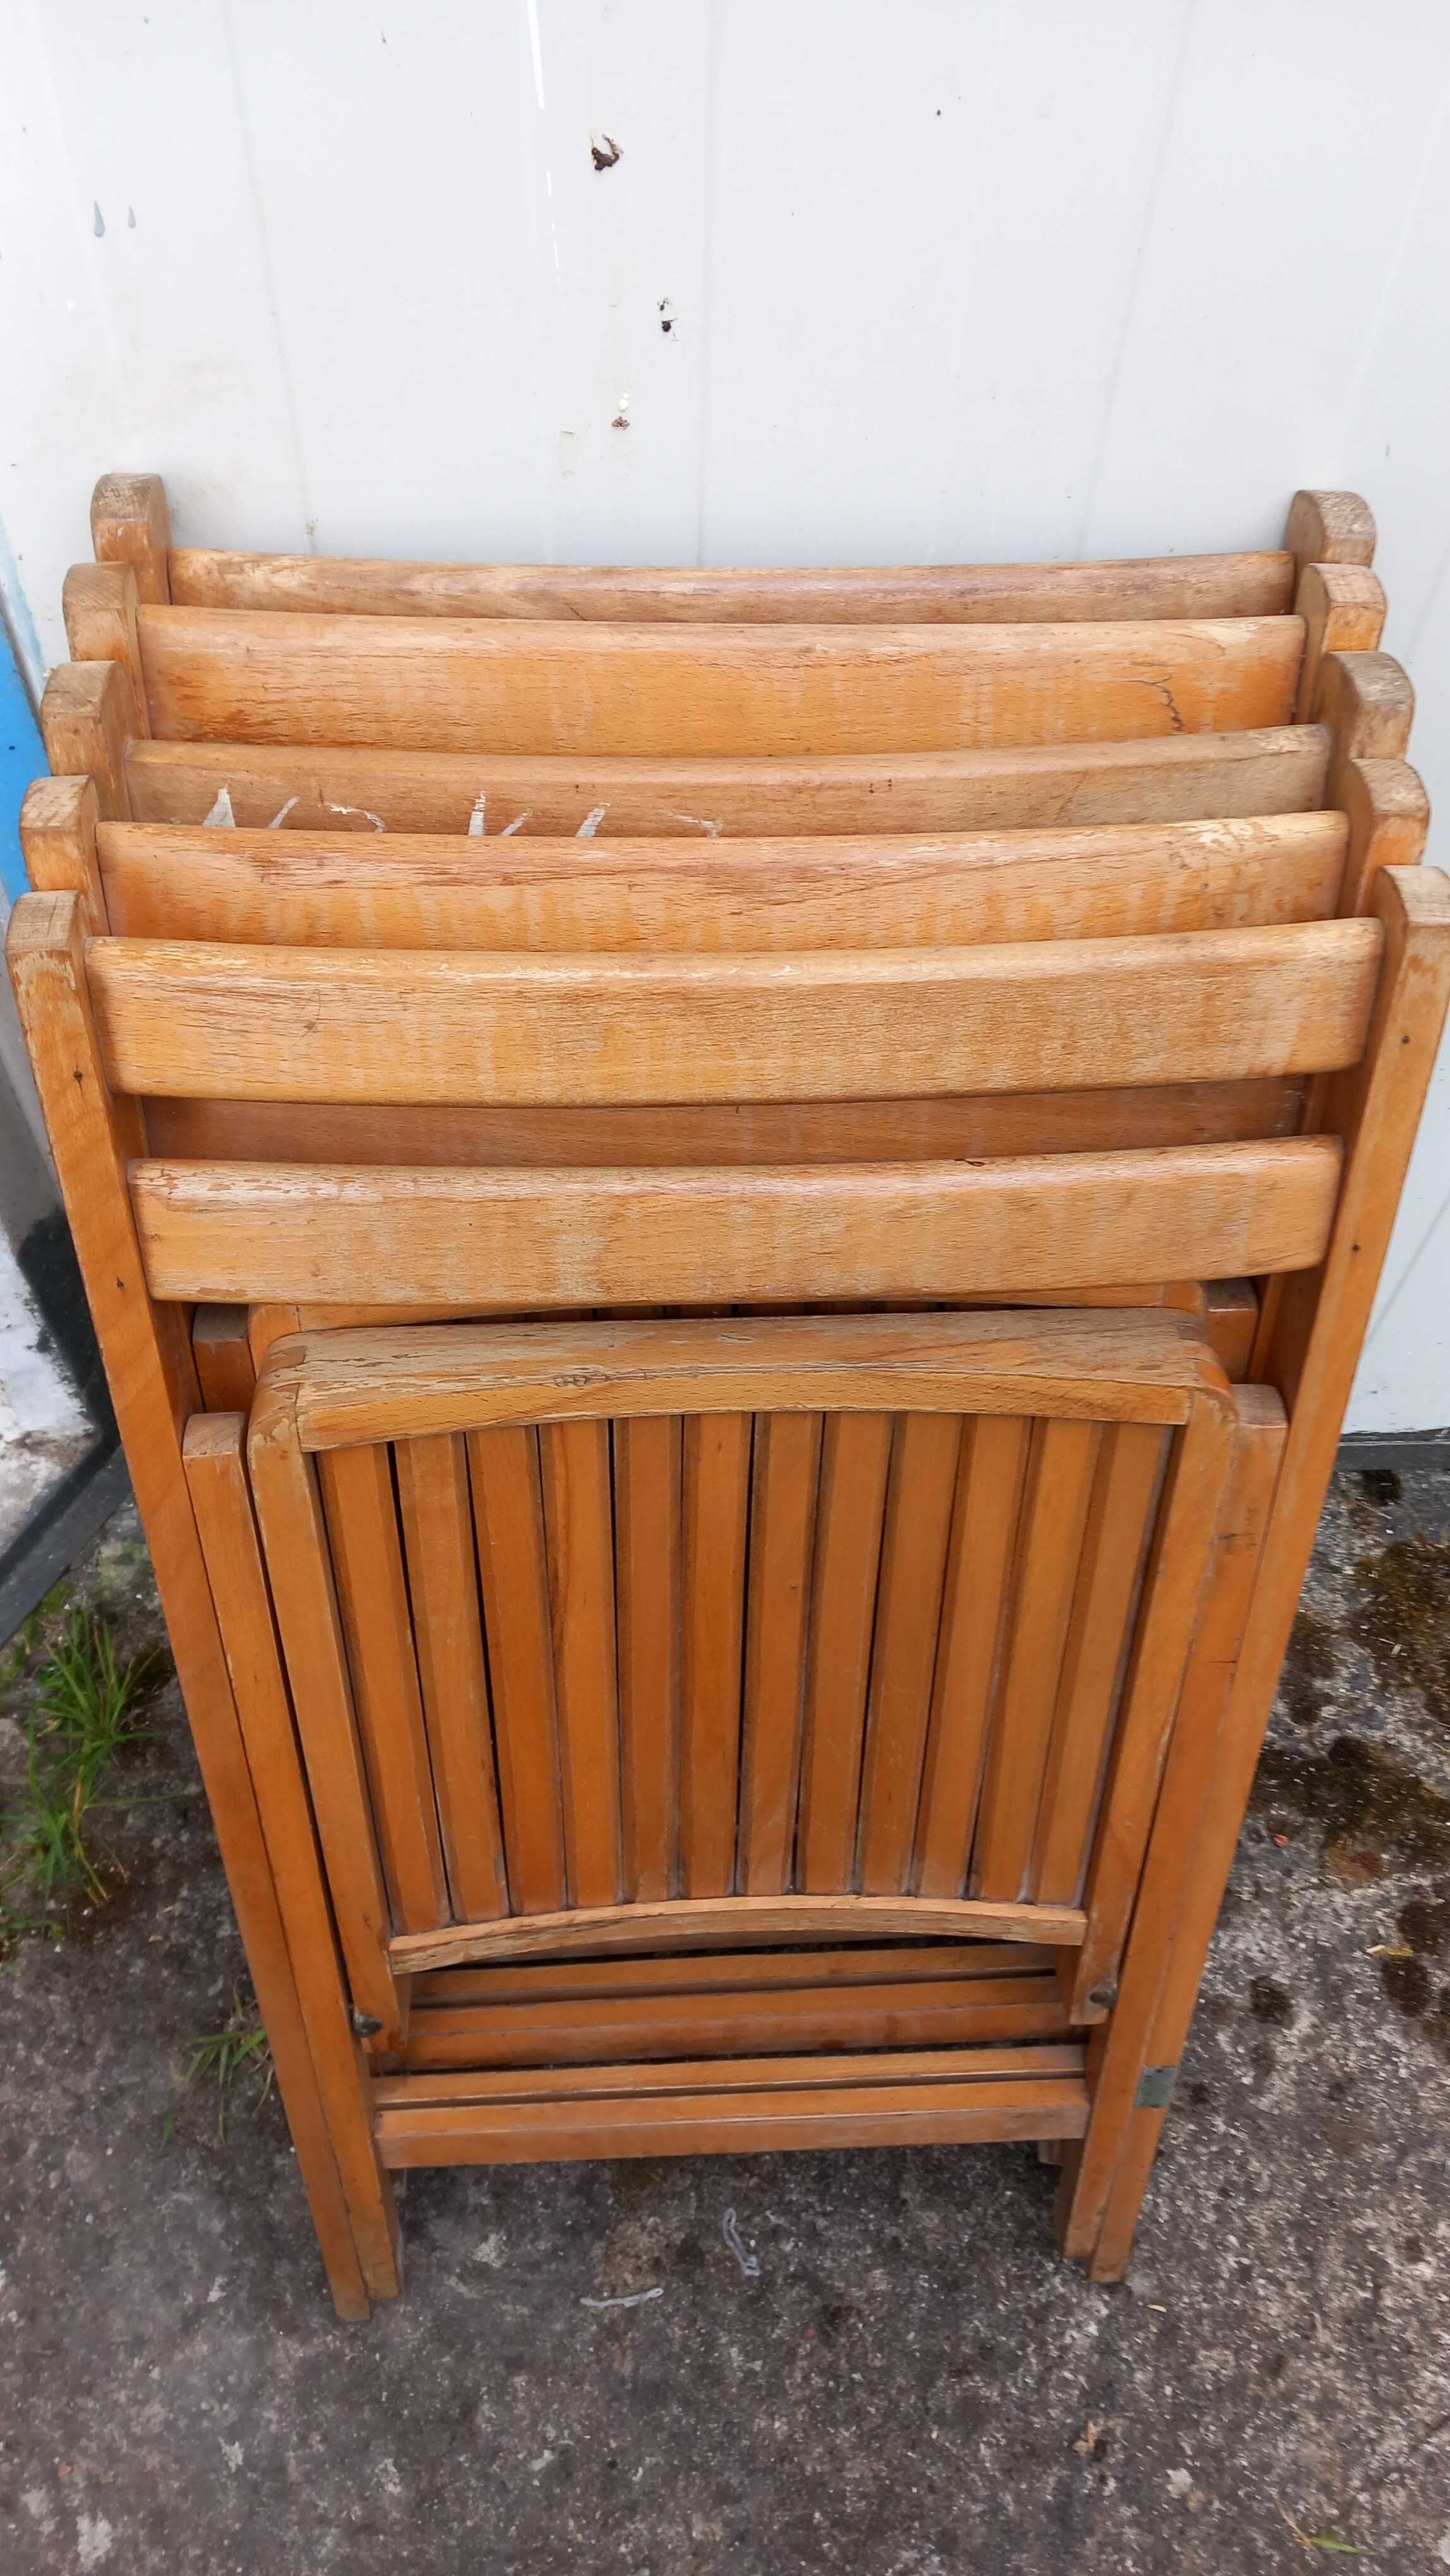 krzesła drewniane składane 5sztuki-bardzo masywne